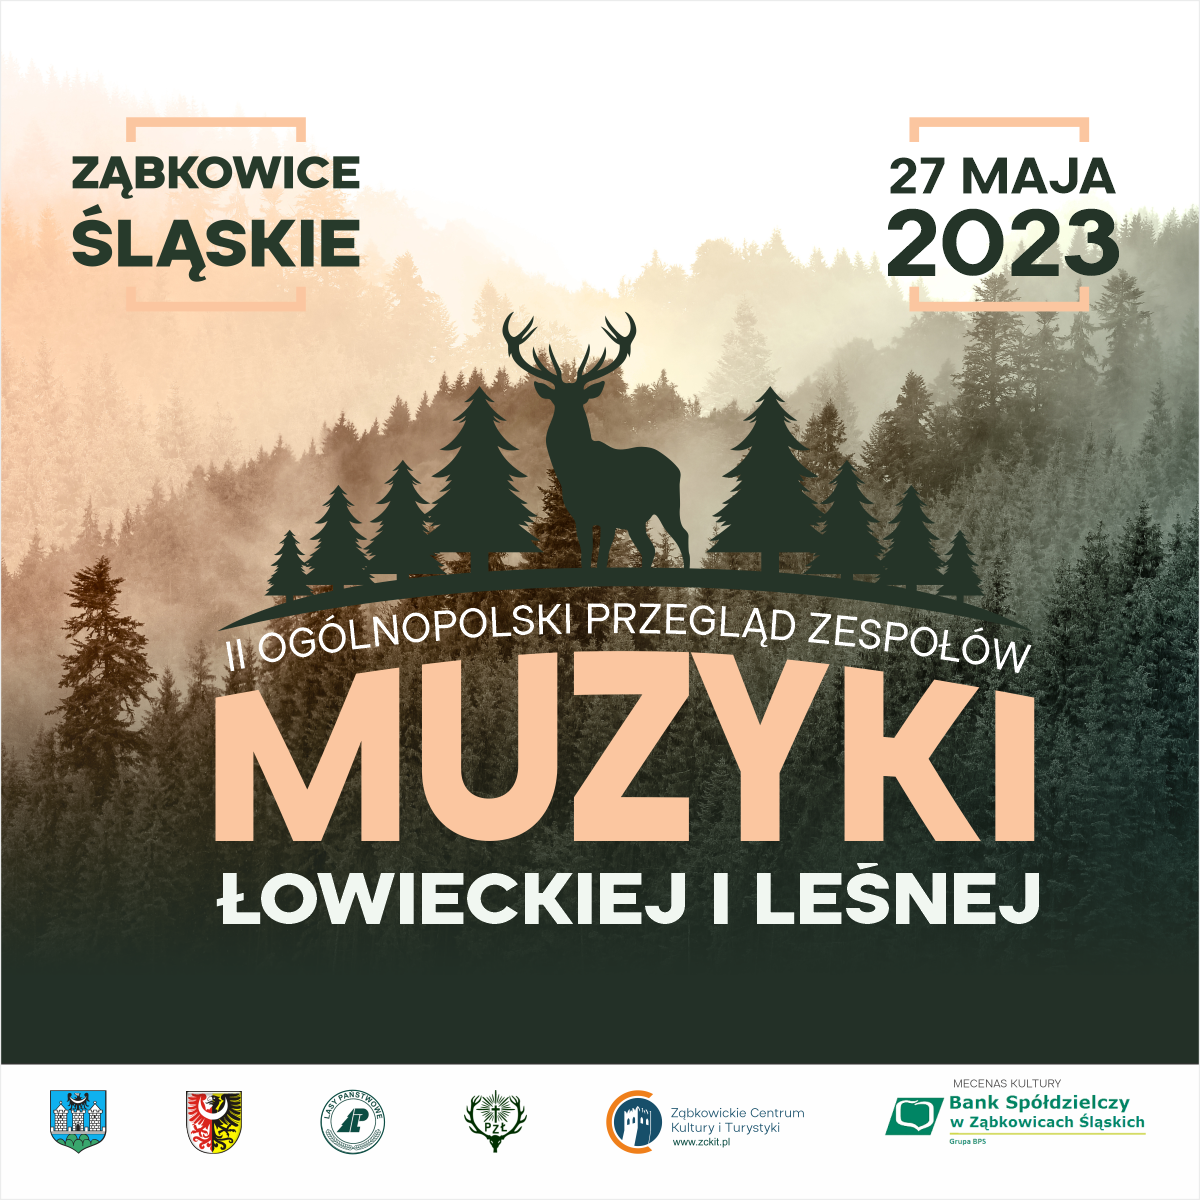 Plakat informujący o II Ogólnopolskim Przeglądzie Zespołów Muzyki Łowieckiej i Leśnej 27 maja 2023 w Ząbkowicach Śląskich.